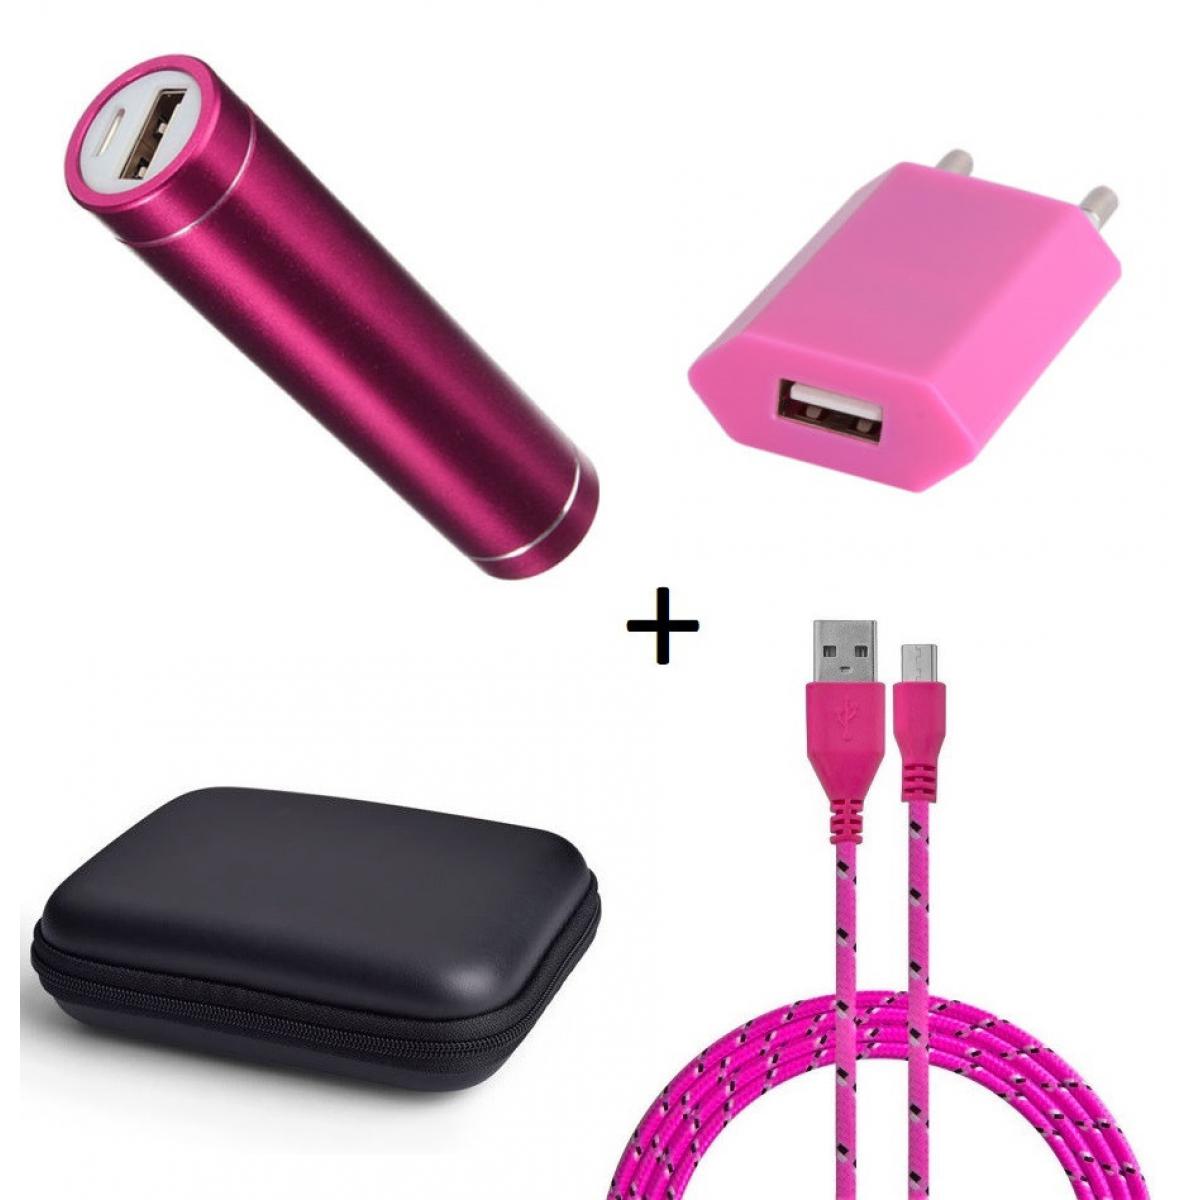 Shot - Pack pour JBL GO 2 (Cable Chargeur Micro USB Tresse 3m + Pochette + Batterie + Prise Secteur) Android (ROSE BONBON) - Chargeur secteur téléphone